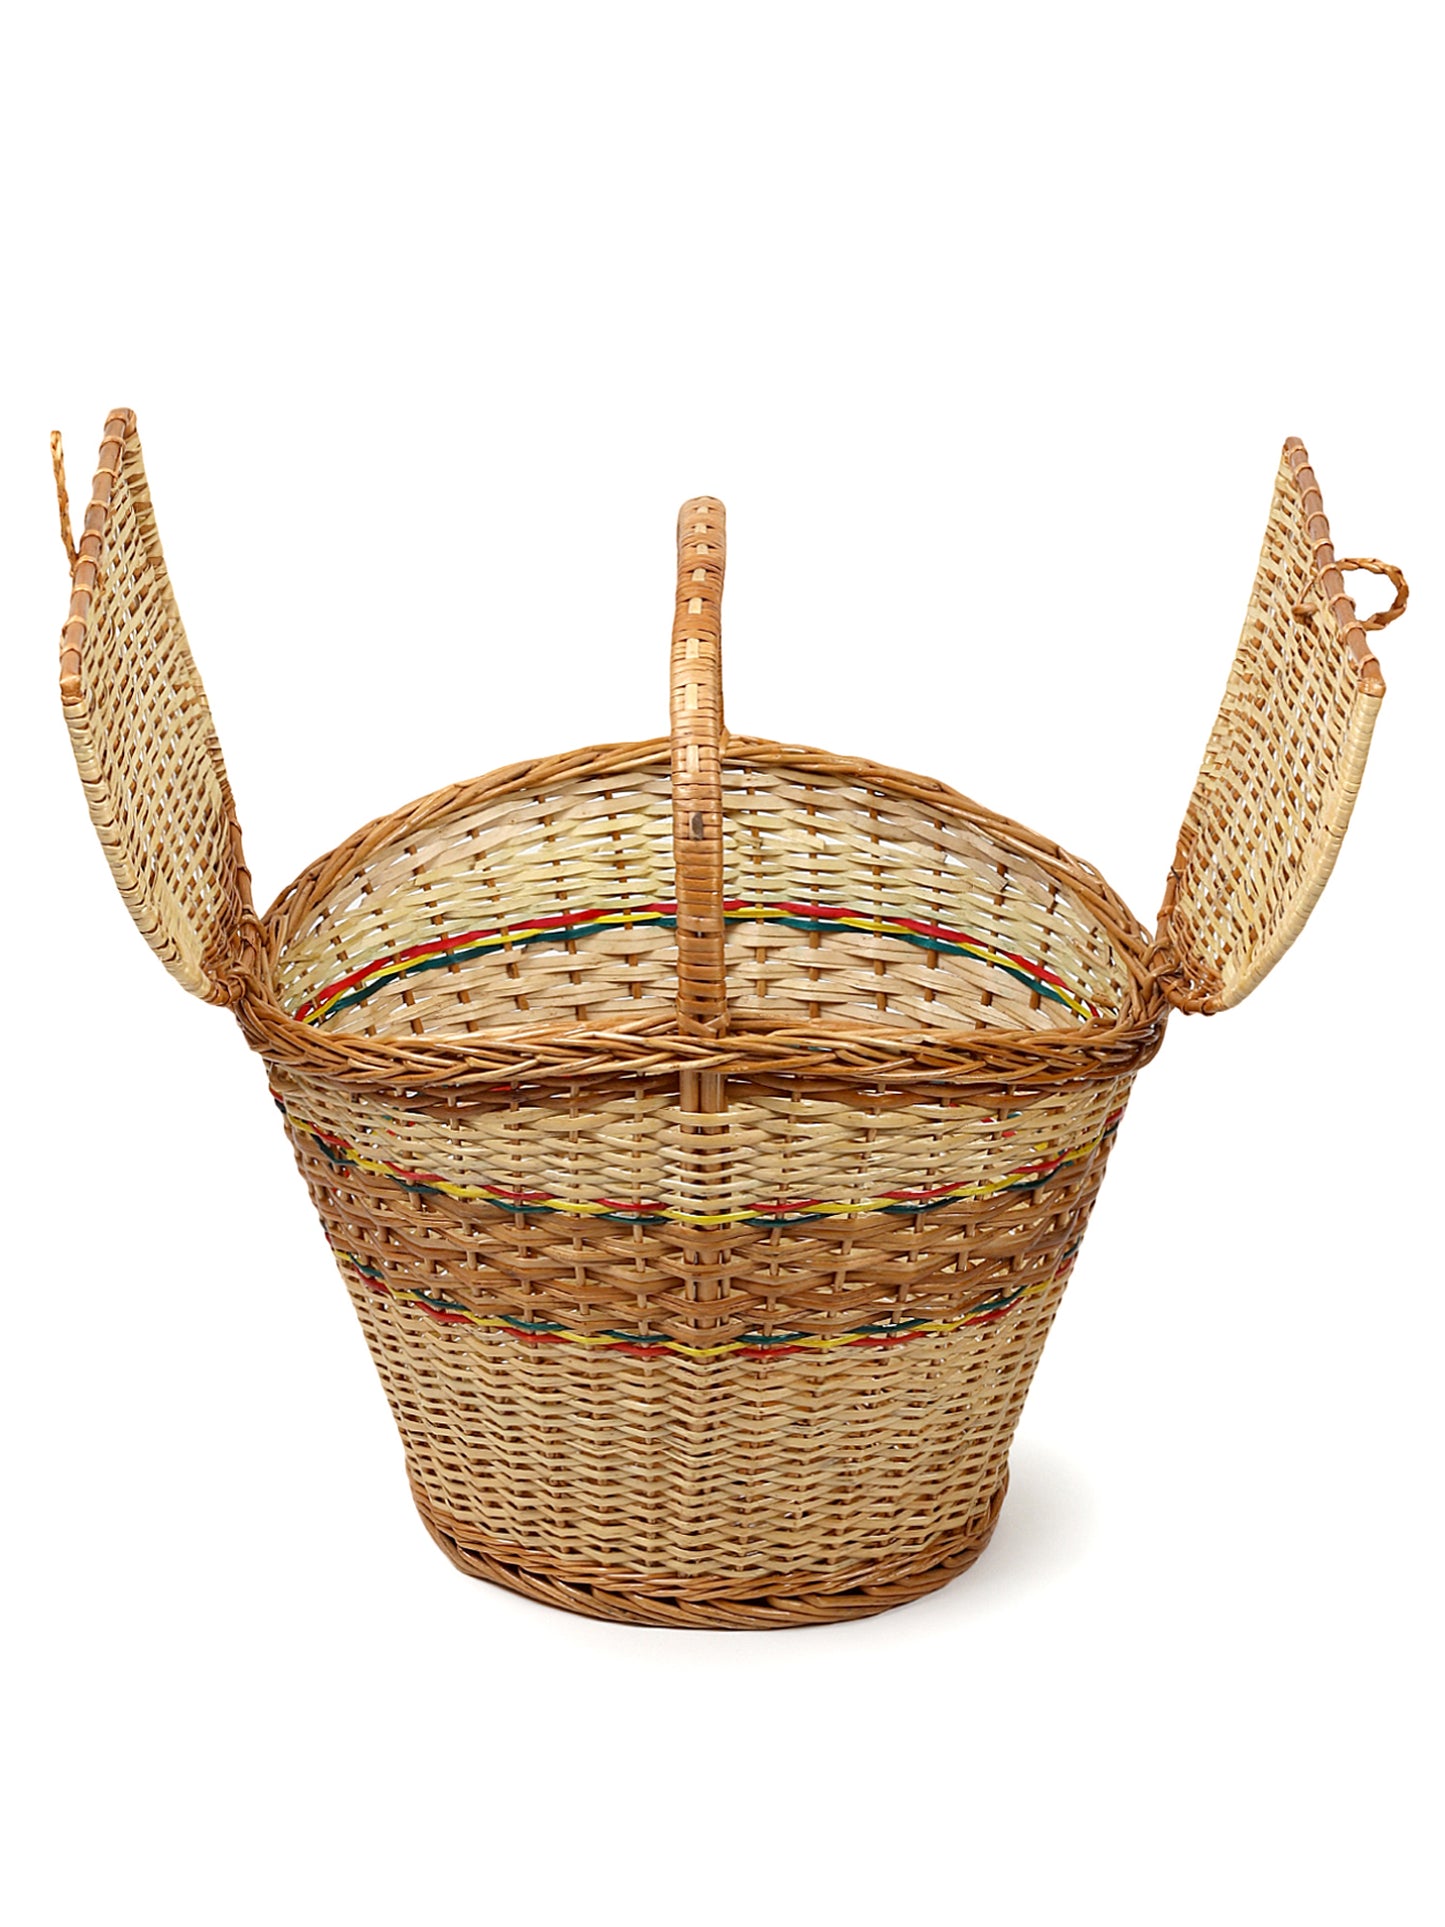 Wicker Picnic Basket | Wicker Travel Basket